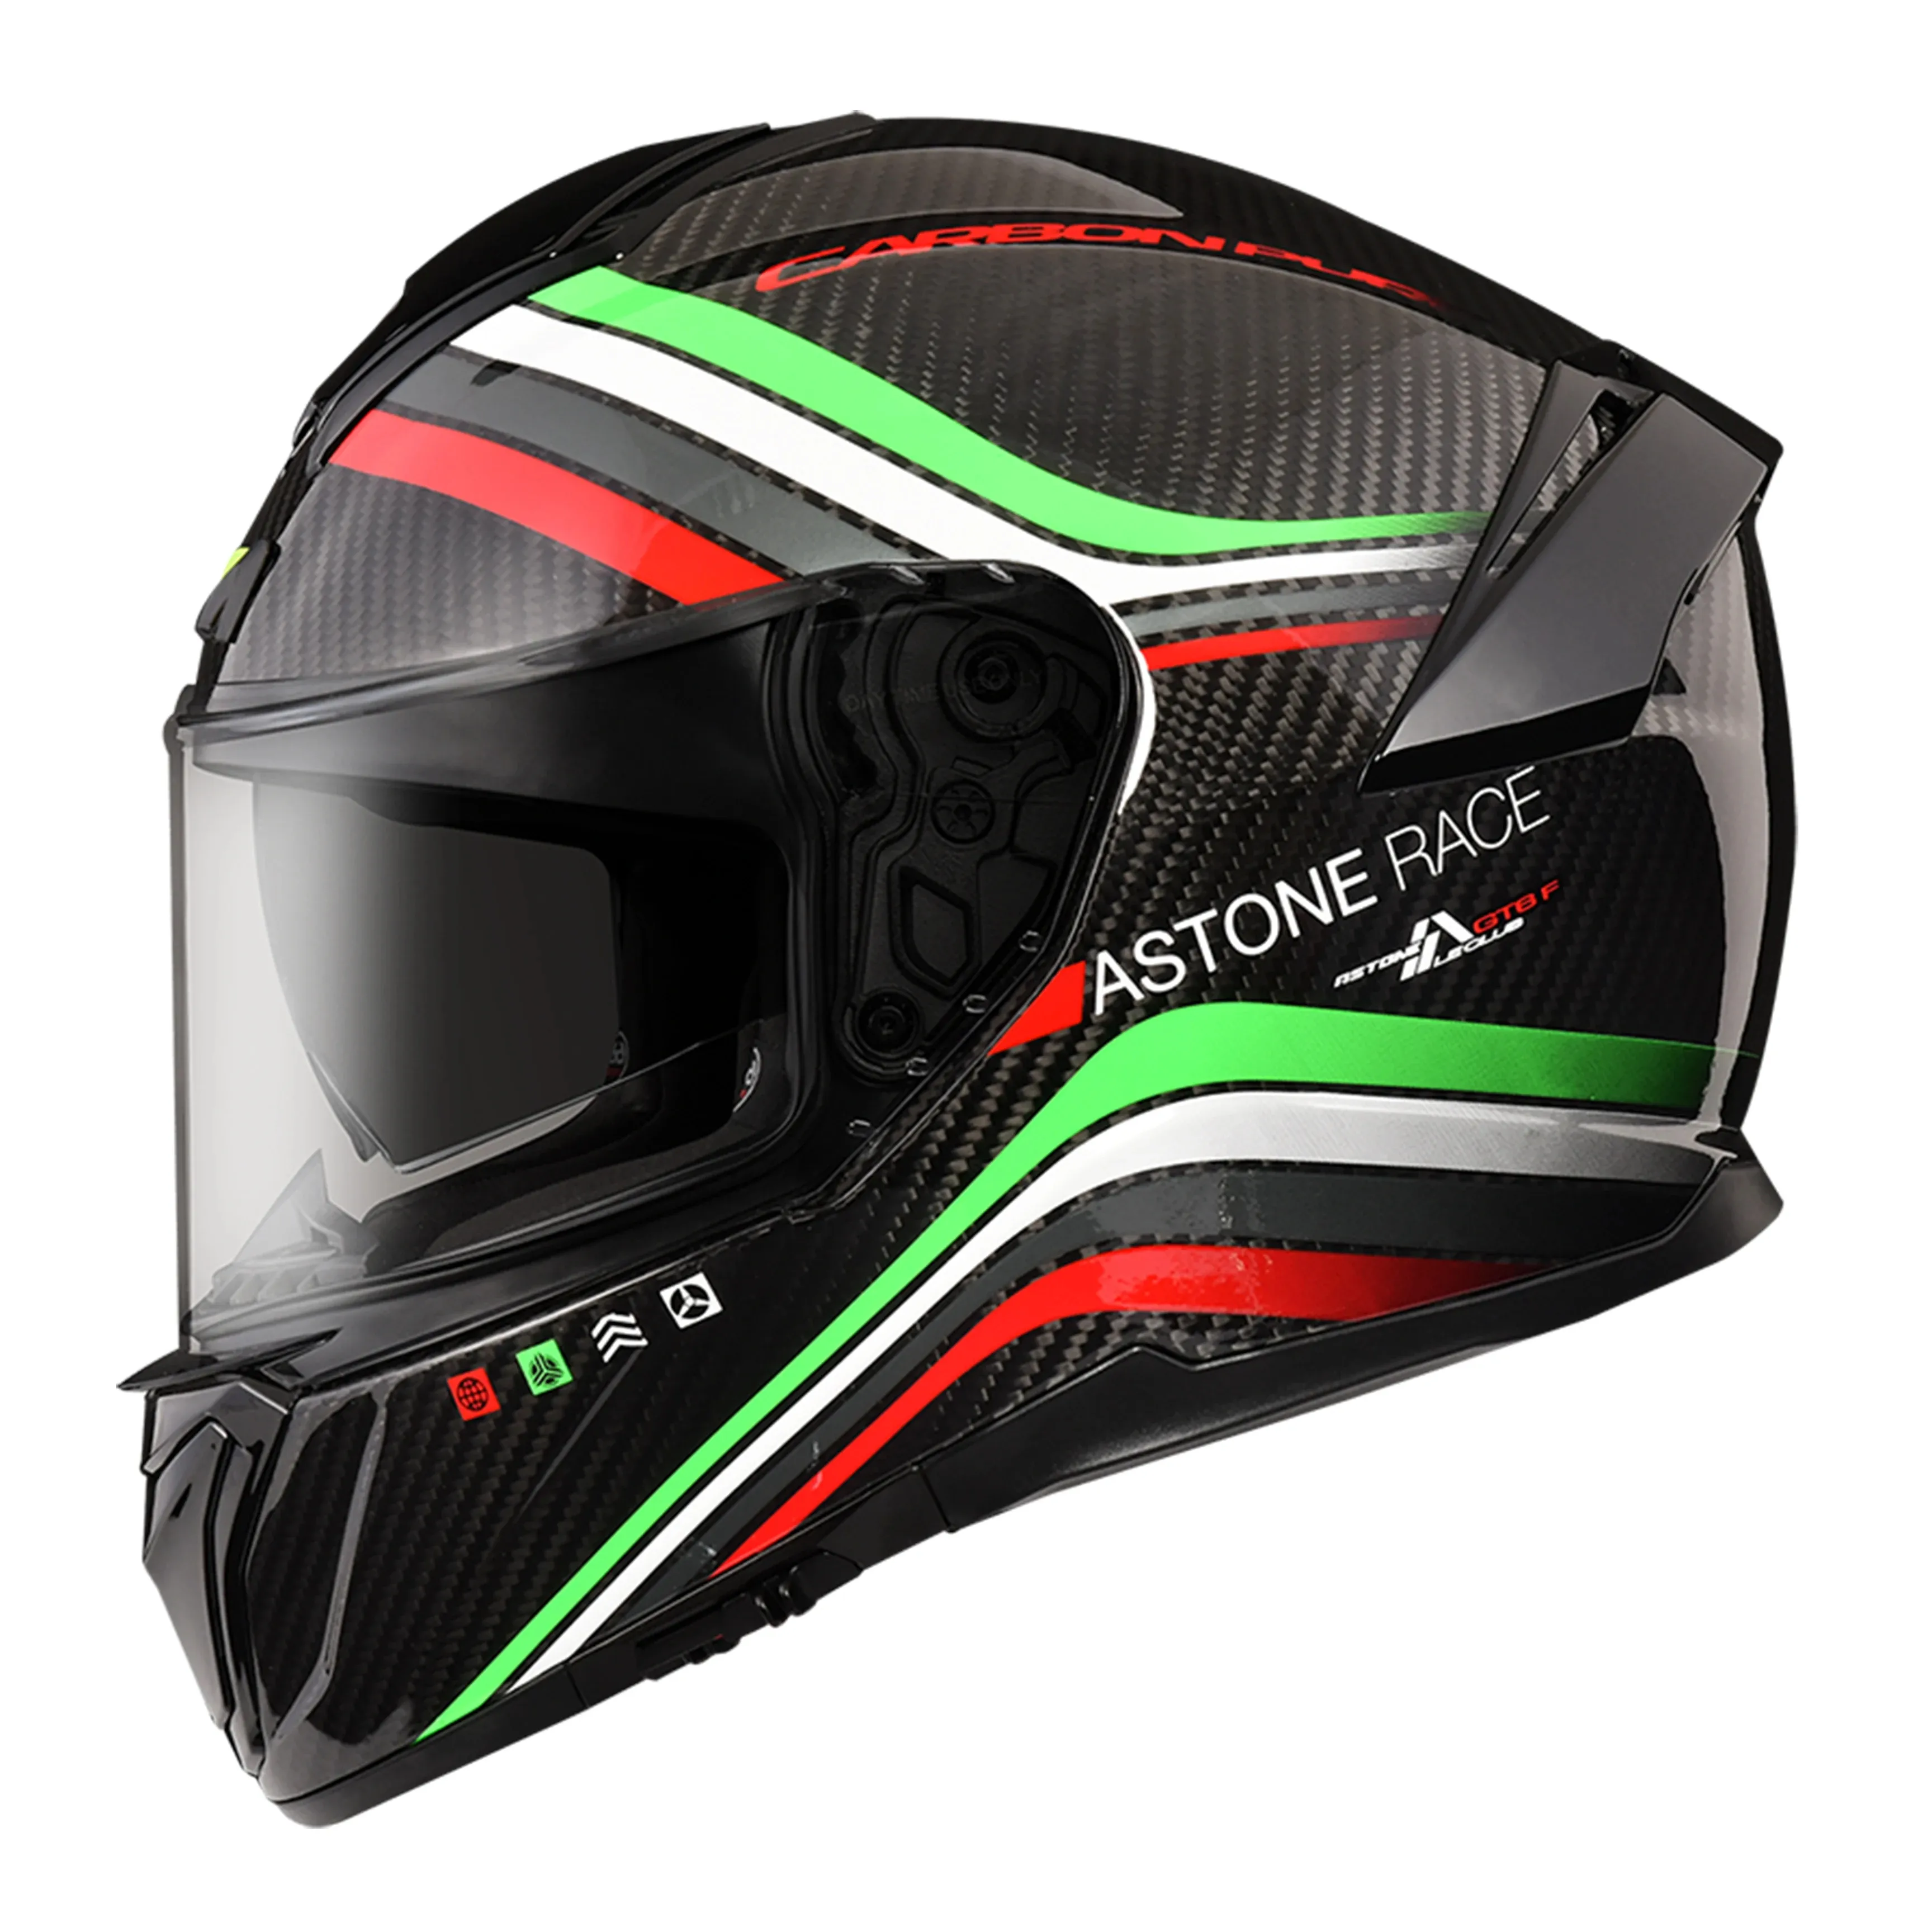 Astone Helmen Global Beste Verkoop Mode Rood/Grijs Carbon Full Face Motorhelm Voor Groothandel Export